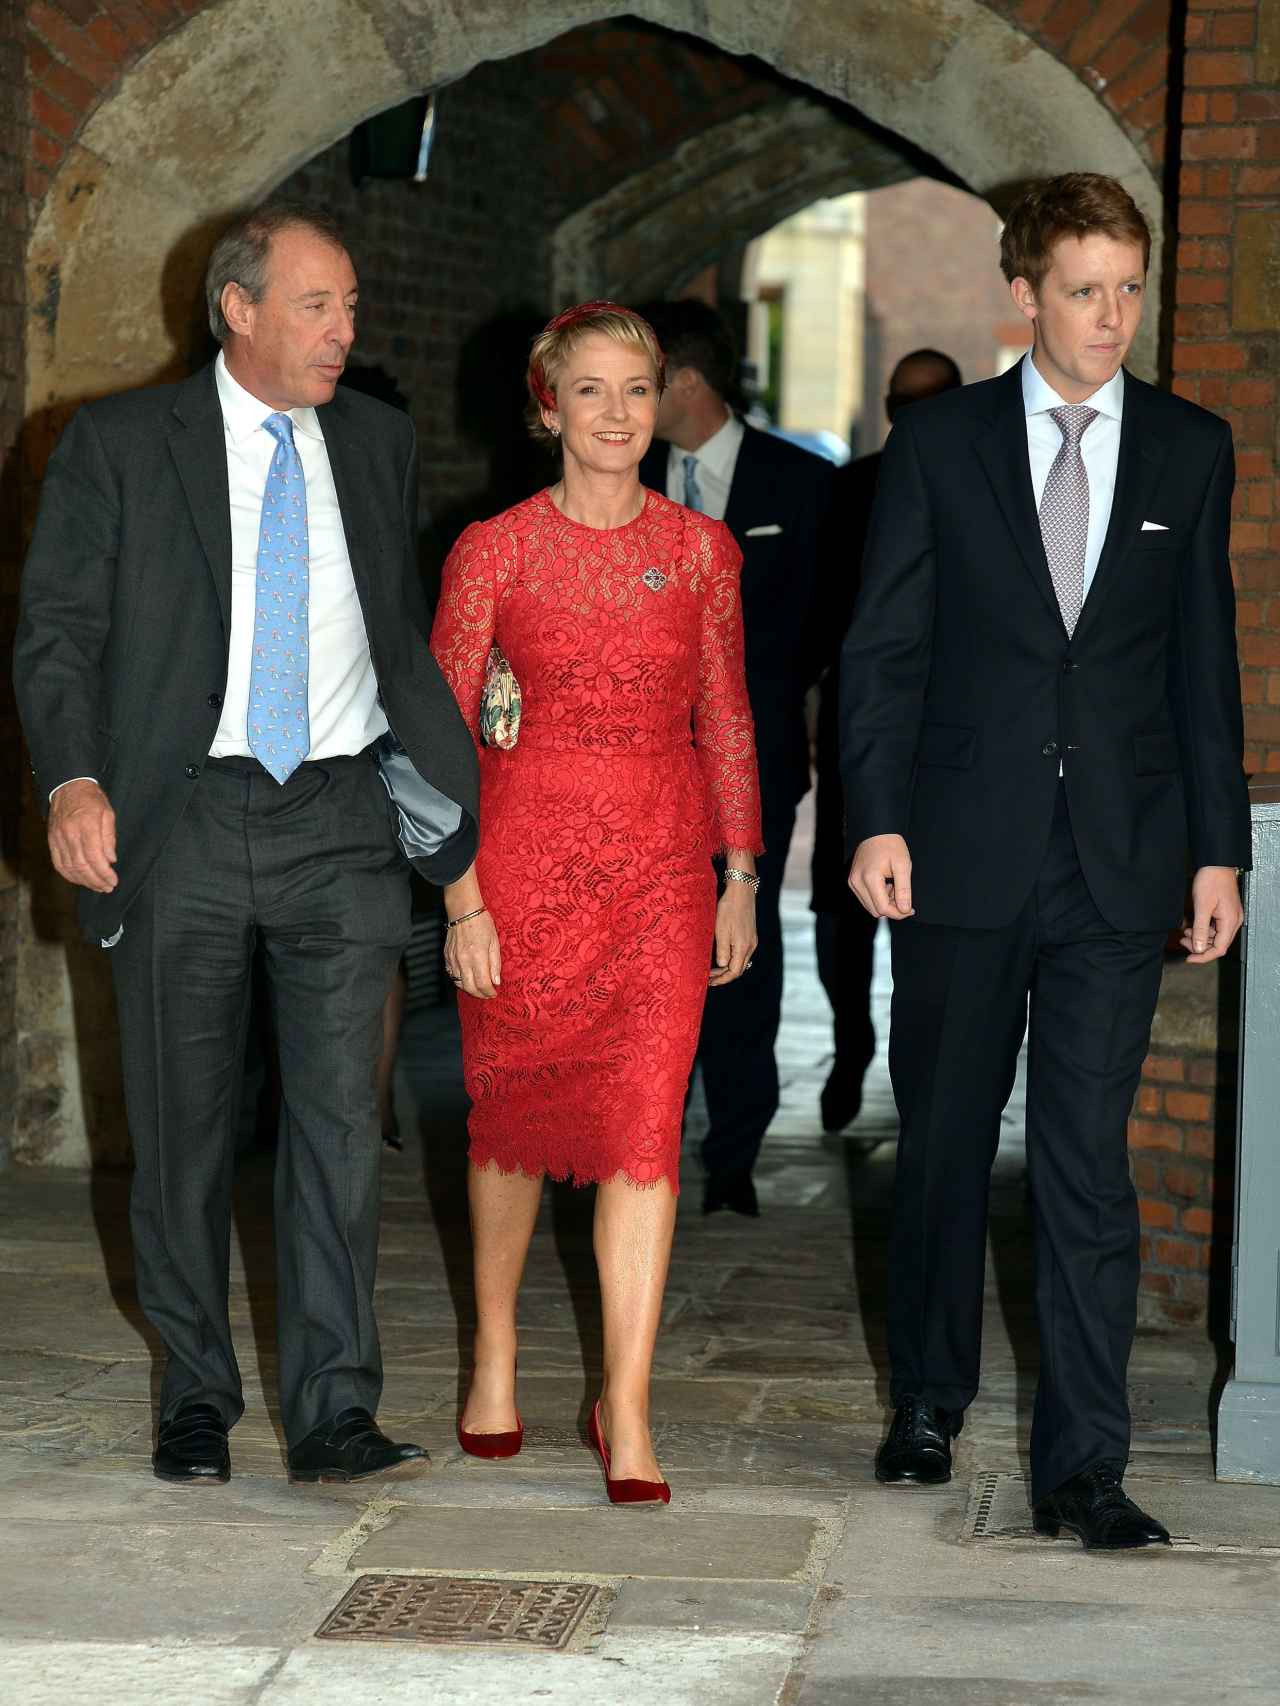 Michael y Julia Samuel junto al duque de Westminster.